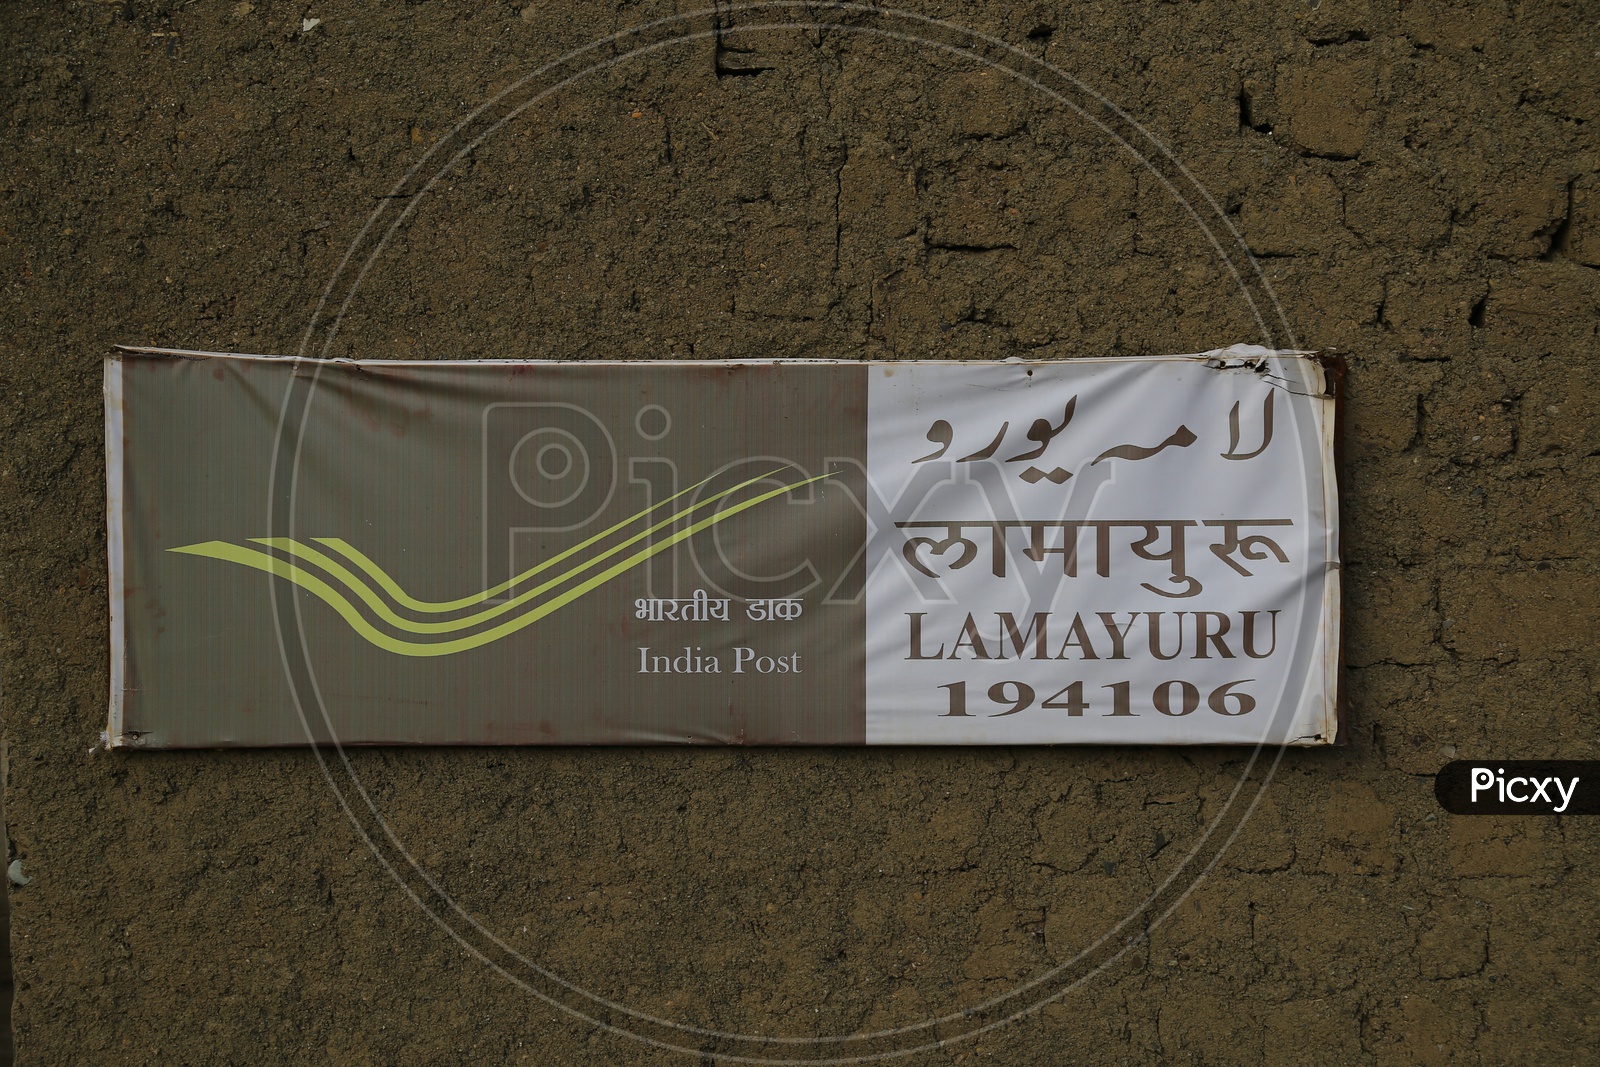 India Post, Lamayuru